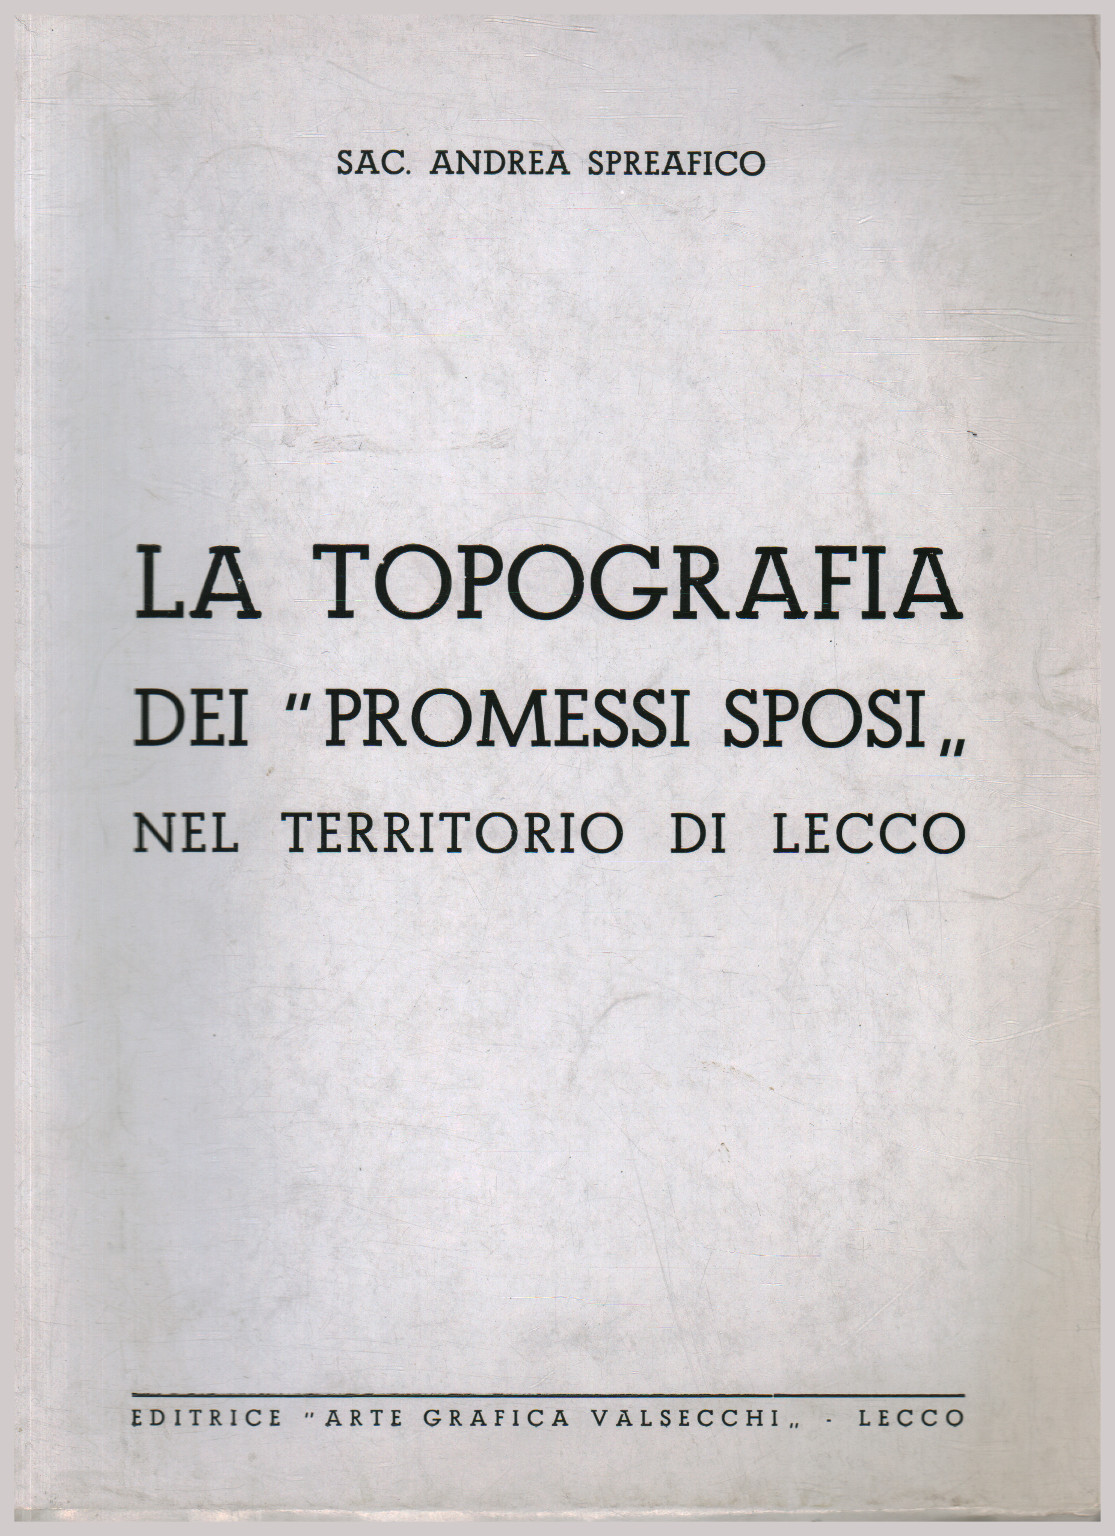 La topografia dei "promessi sposi" nel territorio , s.a.